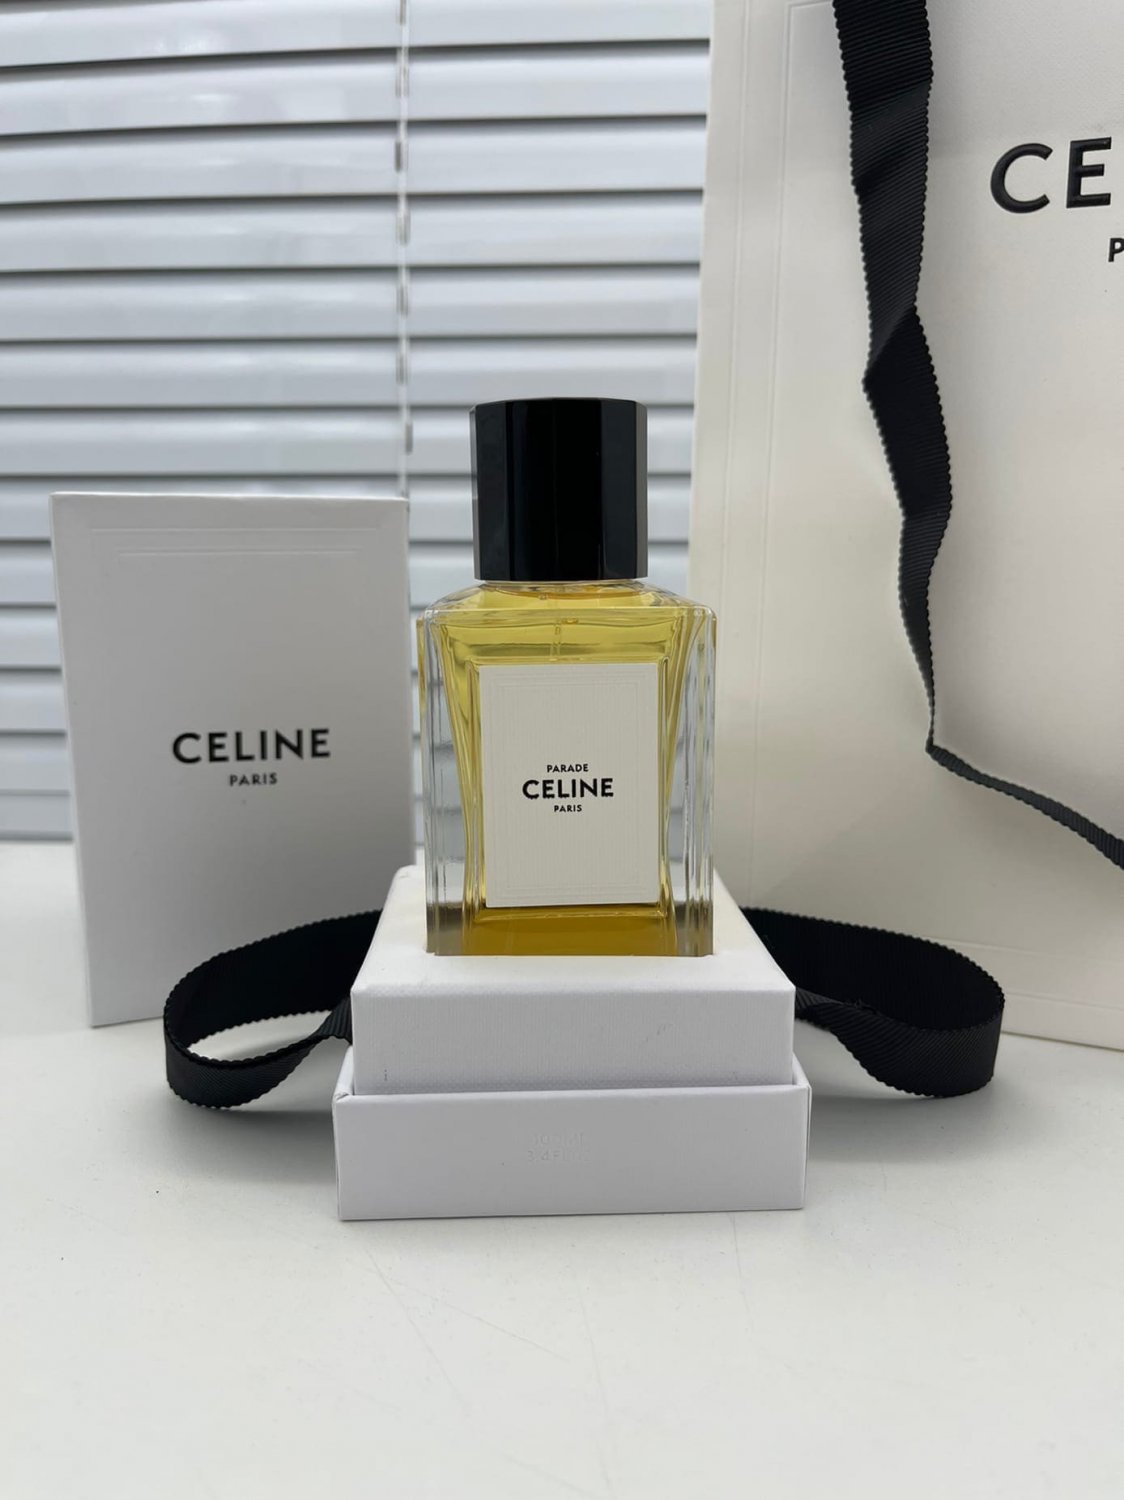 Celine Parade Eau de Parfum, 100 ml - 3.4 fl.oz. Spray